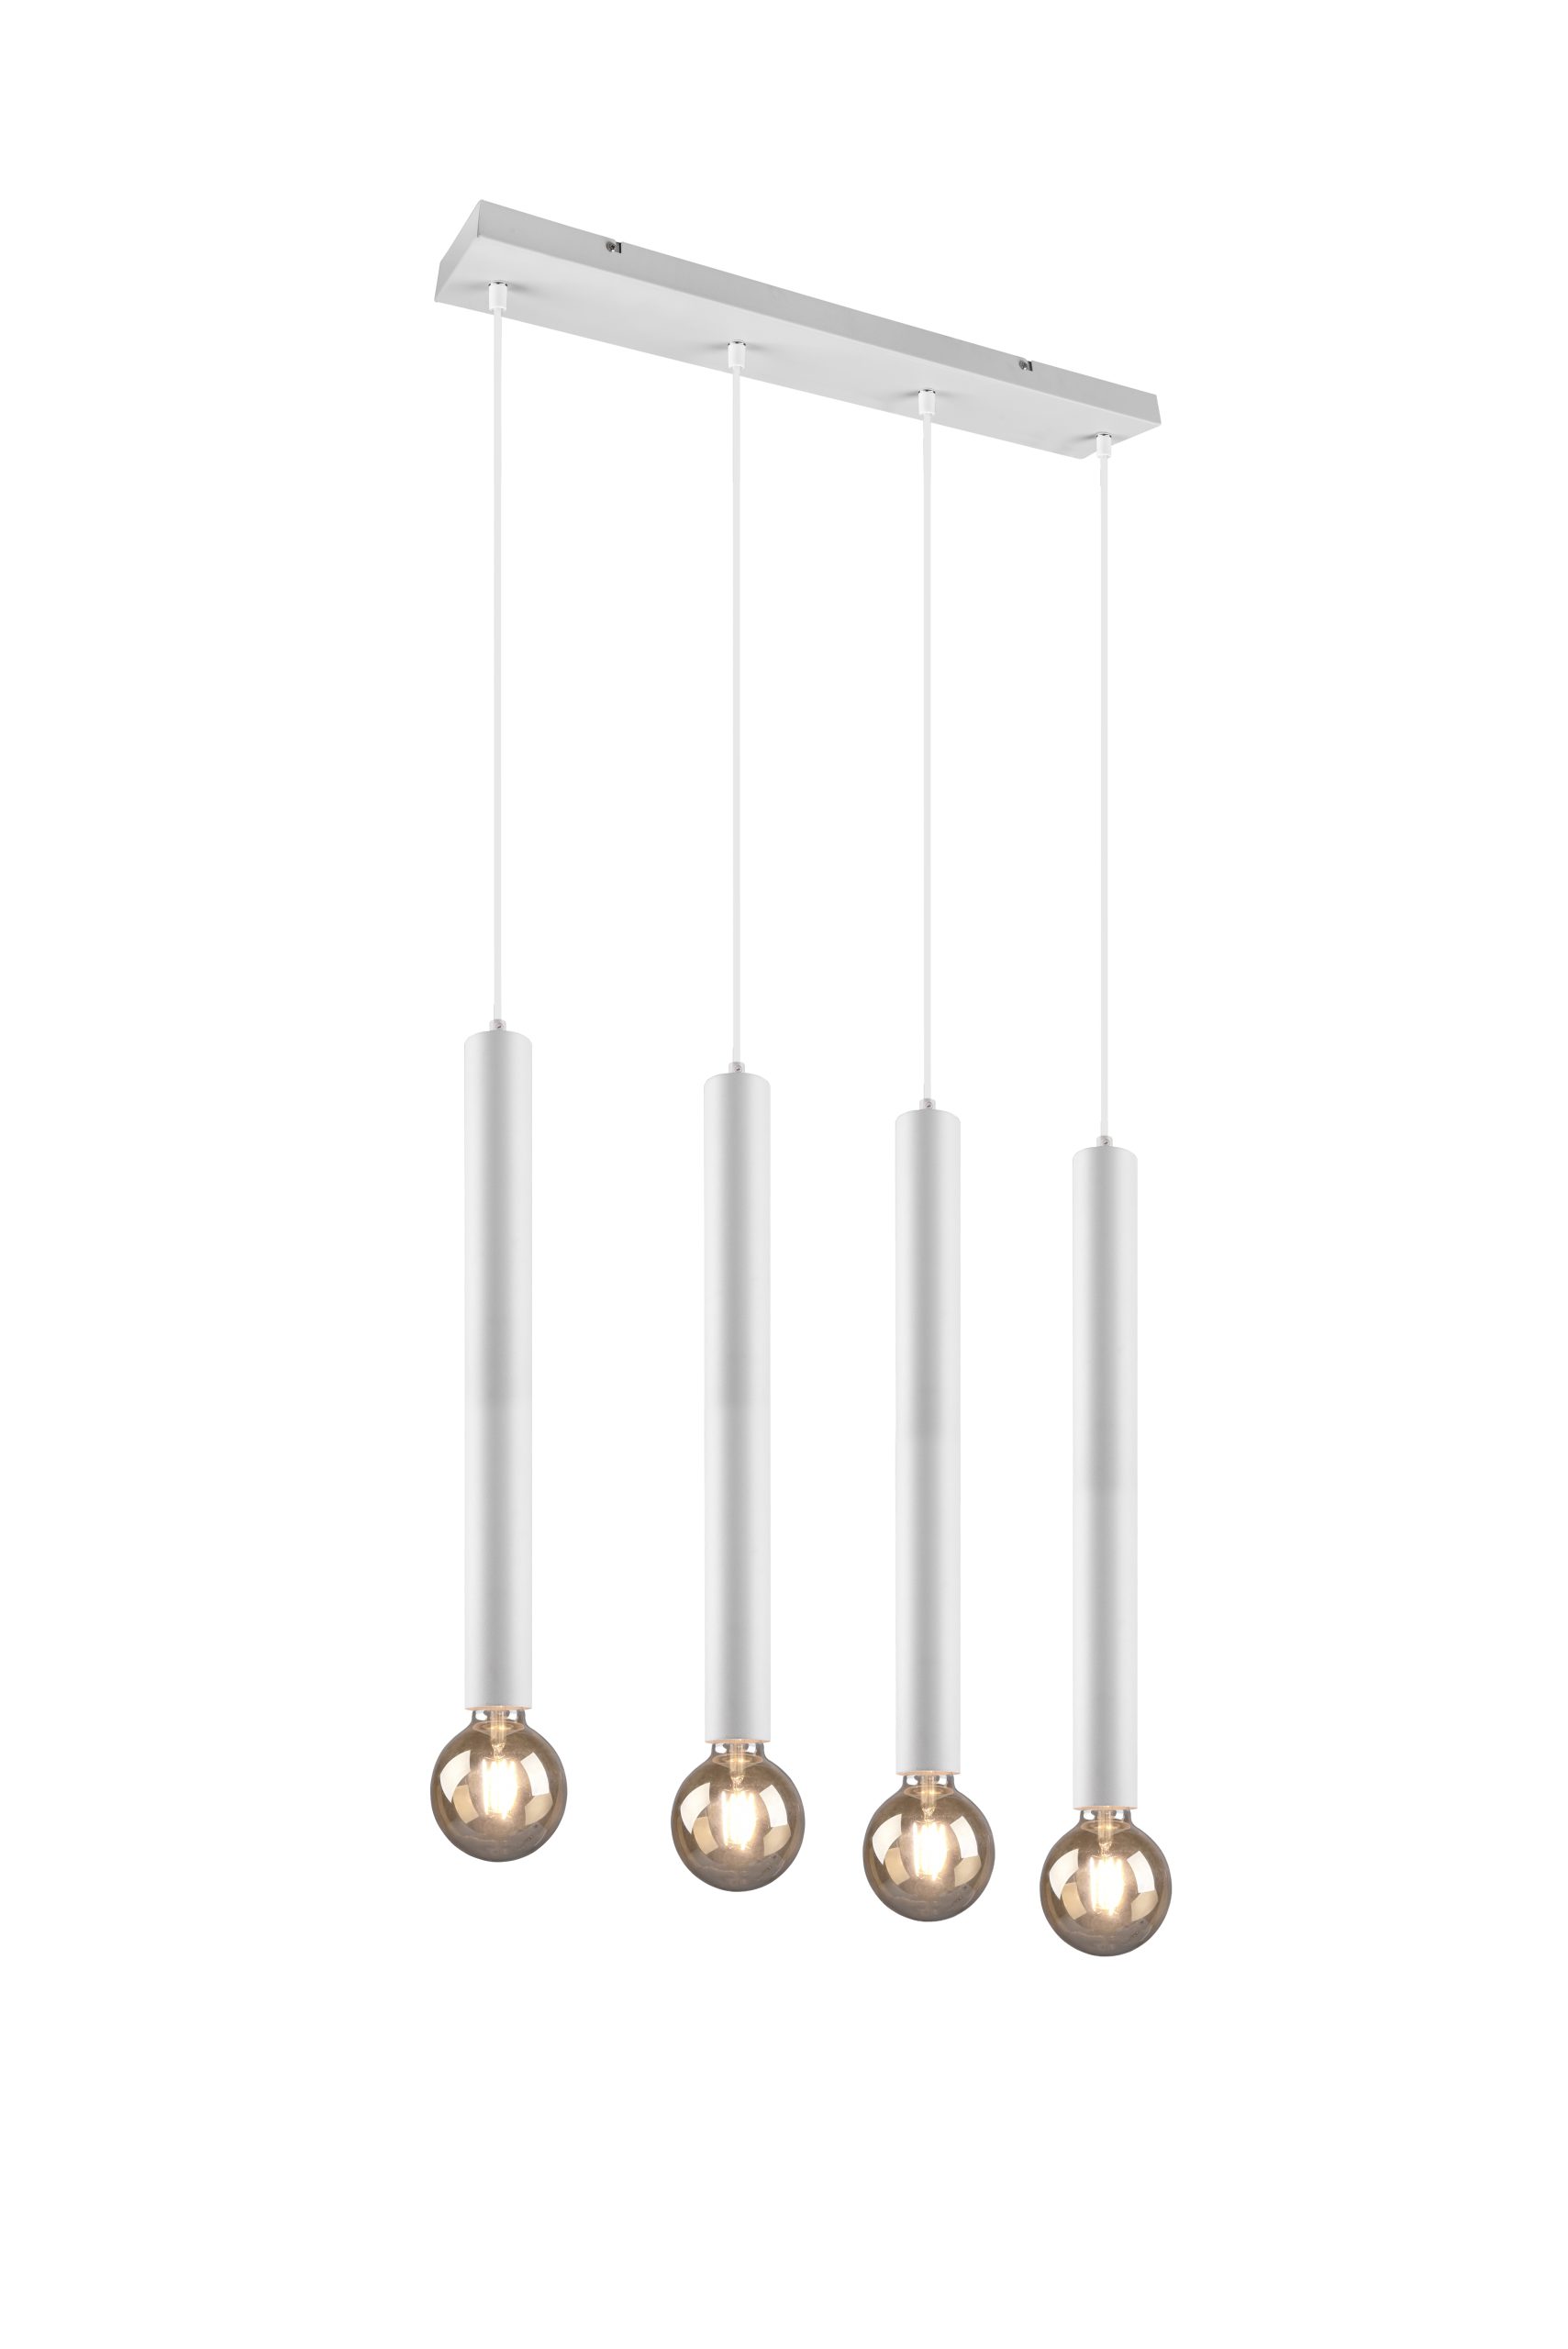 moderne-witte-hanglamp-met-rookglas-trio-leuchten-clermont-313400431